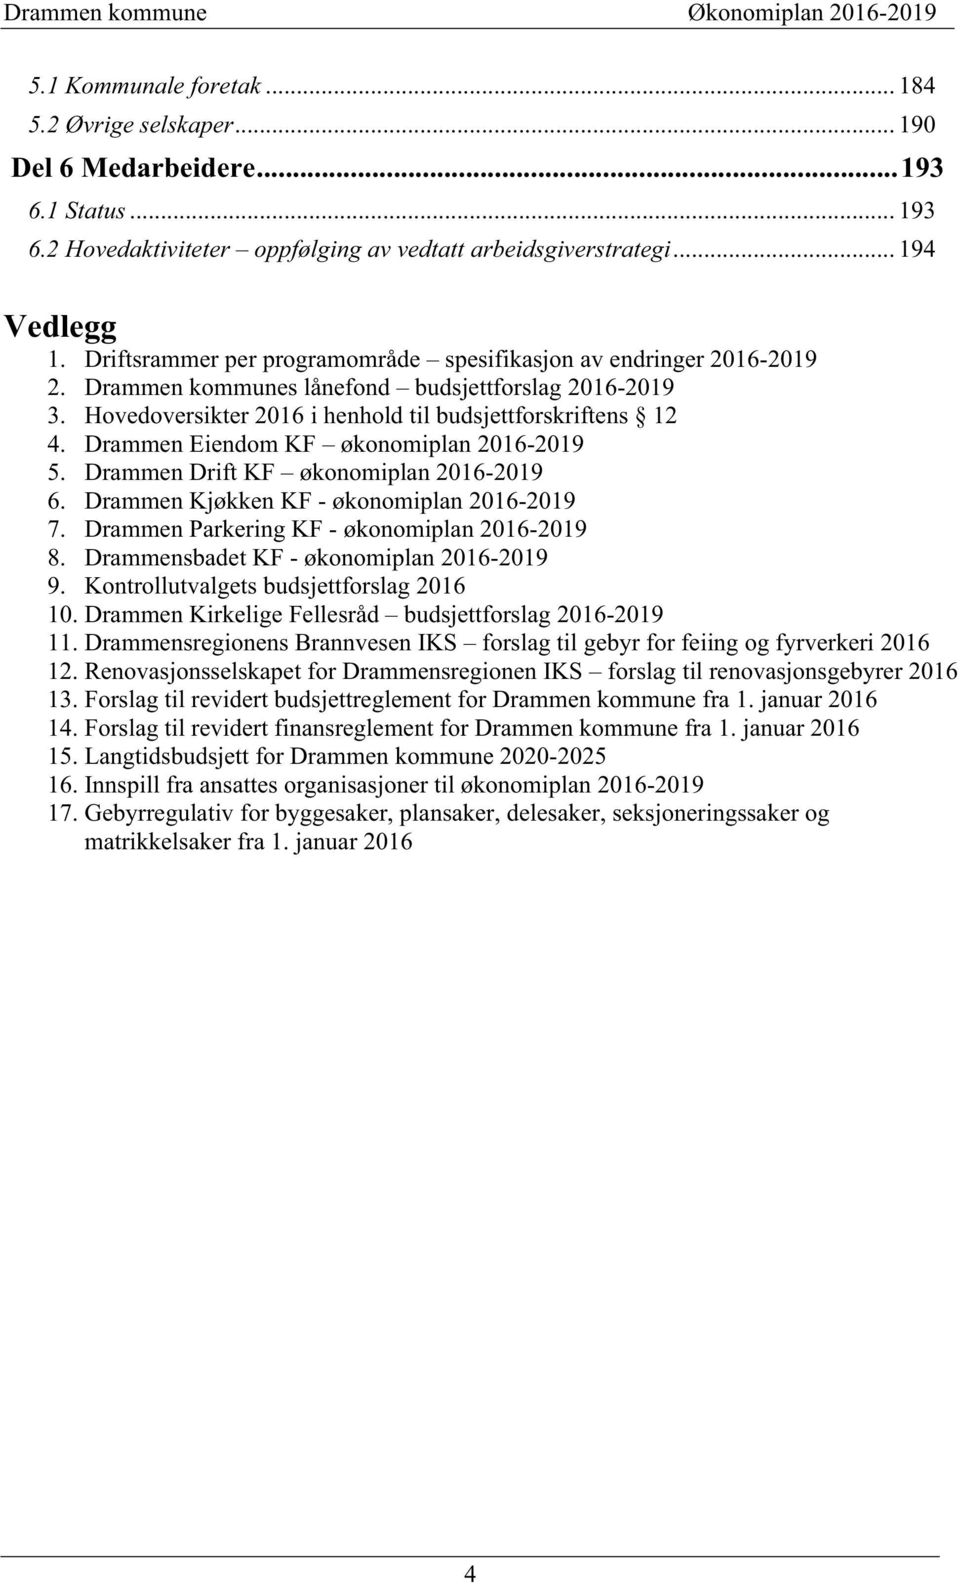 Hovedoversikter 2016 i henhold til budsjettforskriftens 12 4. Drammen Eiendom KF økonomiplan 2016-2019 5. Drammen Drift KF økonomiplan 2016-2019 6. Drammen Kjøkken KF - økonomiplan 2016-2019 7.